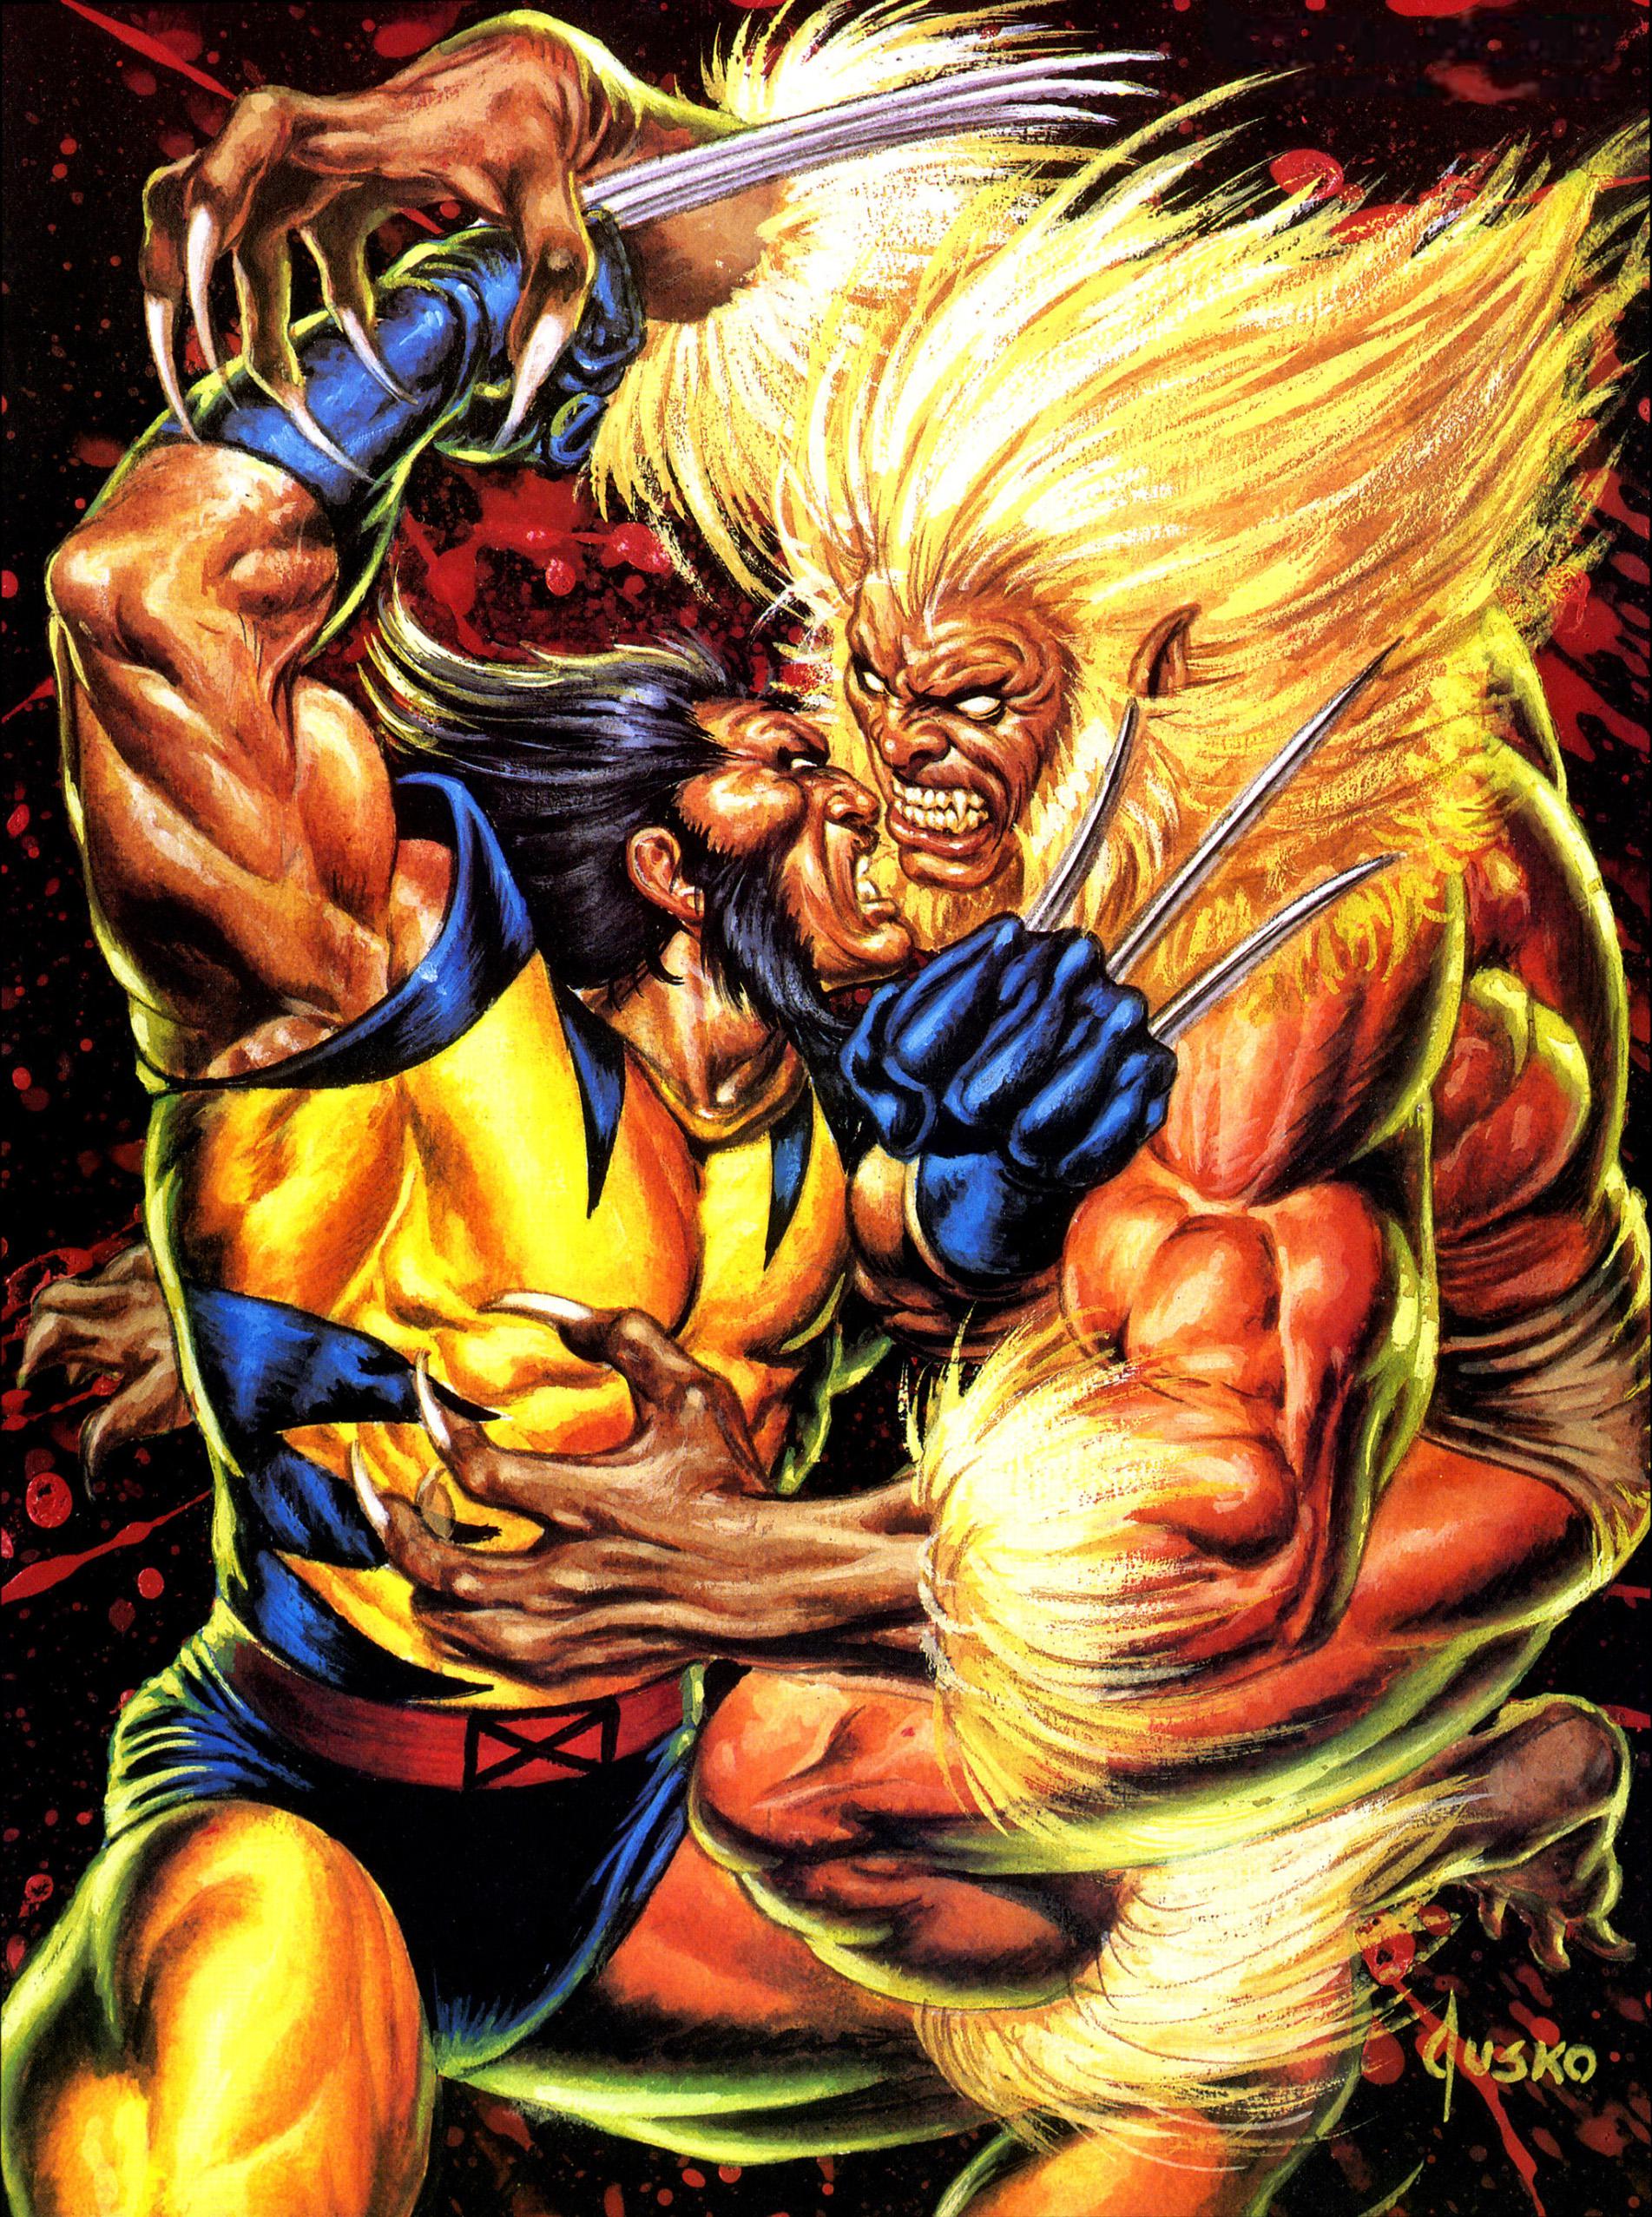 Wolverine vs Sabretooth card art by Joe Jusko (1992): Wolverine